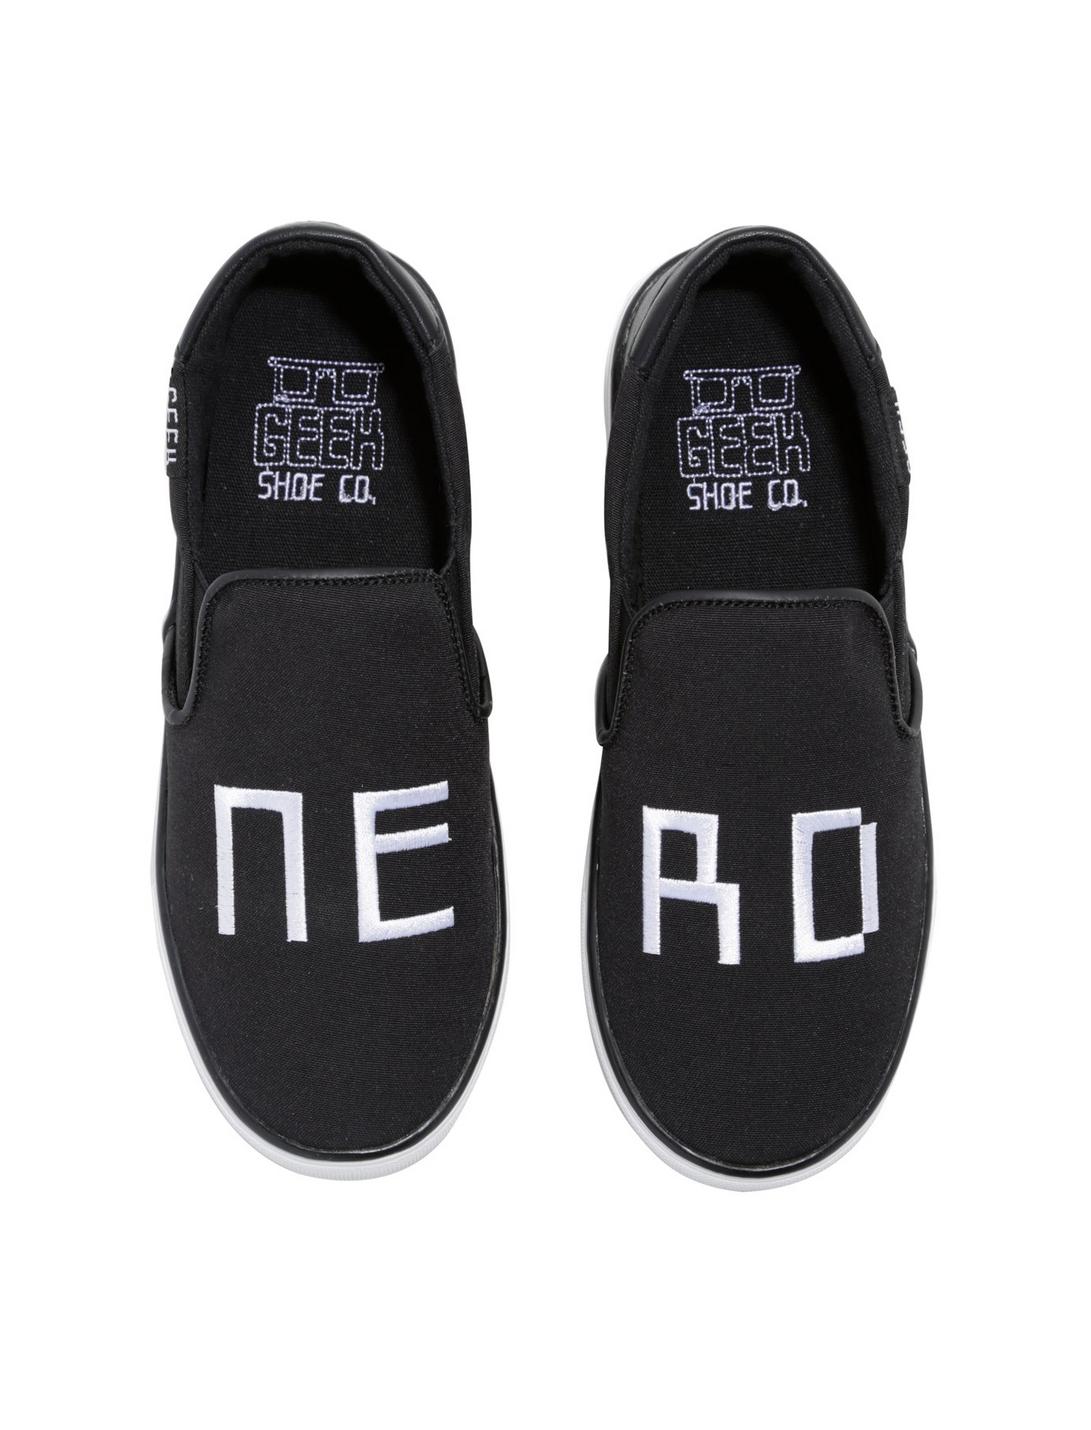 Nerd Embroidered Black Slip-On Shoes, BLACK, hi-res